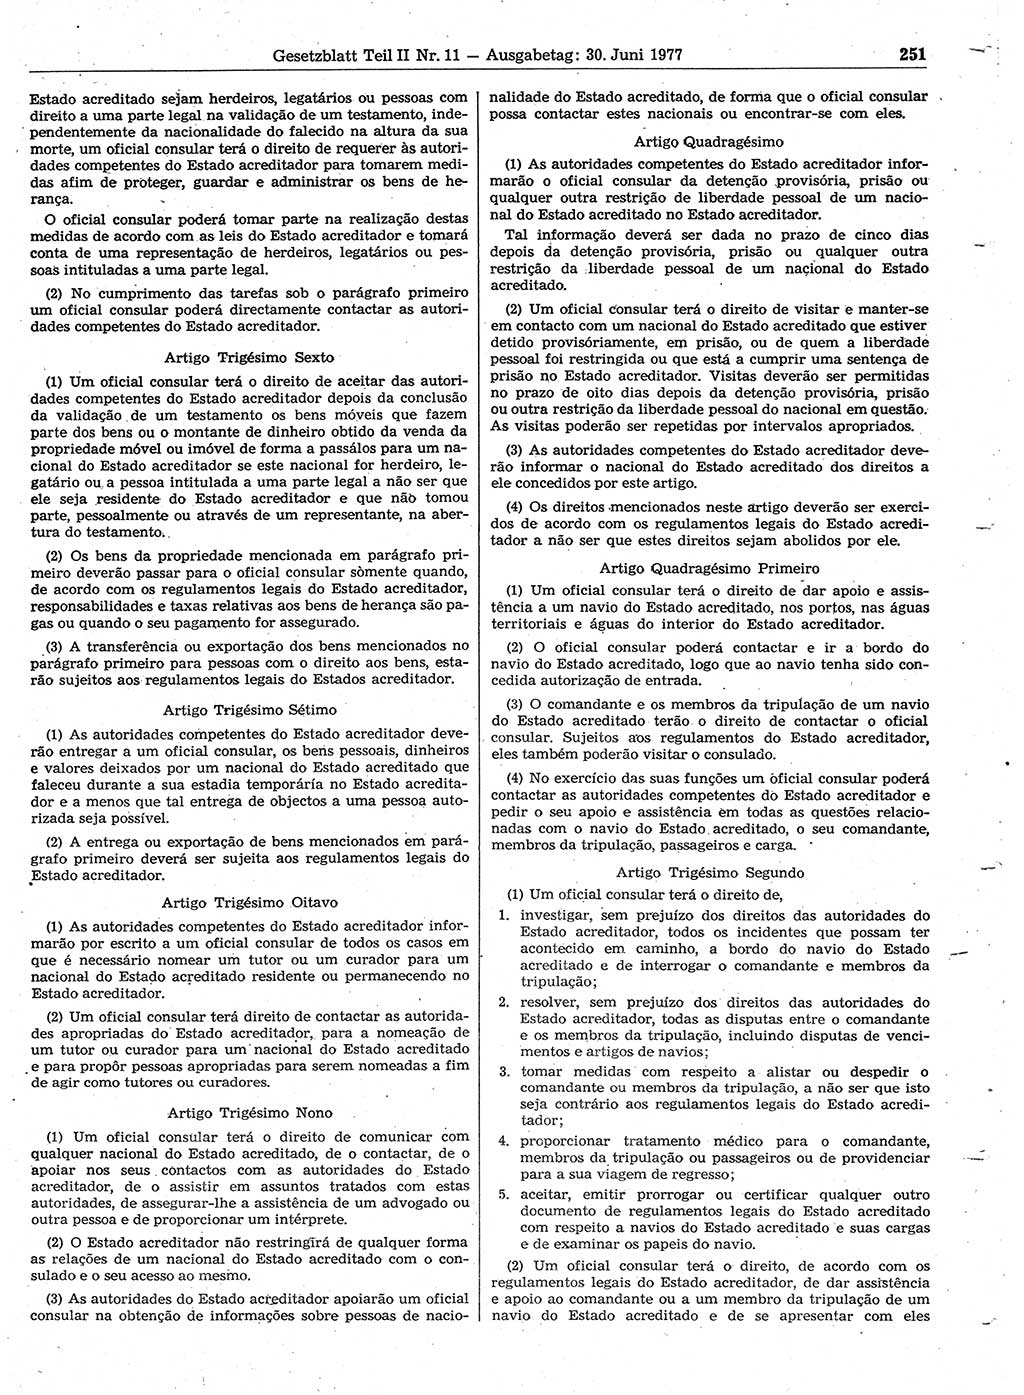 Gesetzblatt (GBl.) der Deutschen Demokratischen Republik (DDR) Teil ⅠⅠ 1977, Seite 251 (GBl. DDR ⅠⅠ 1977, S. 251)